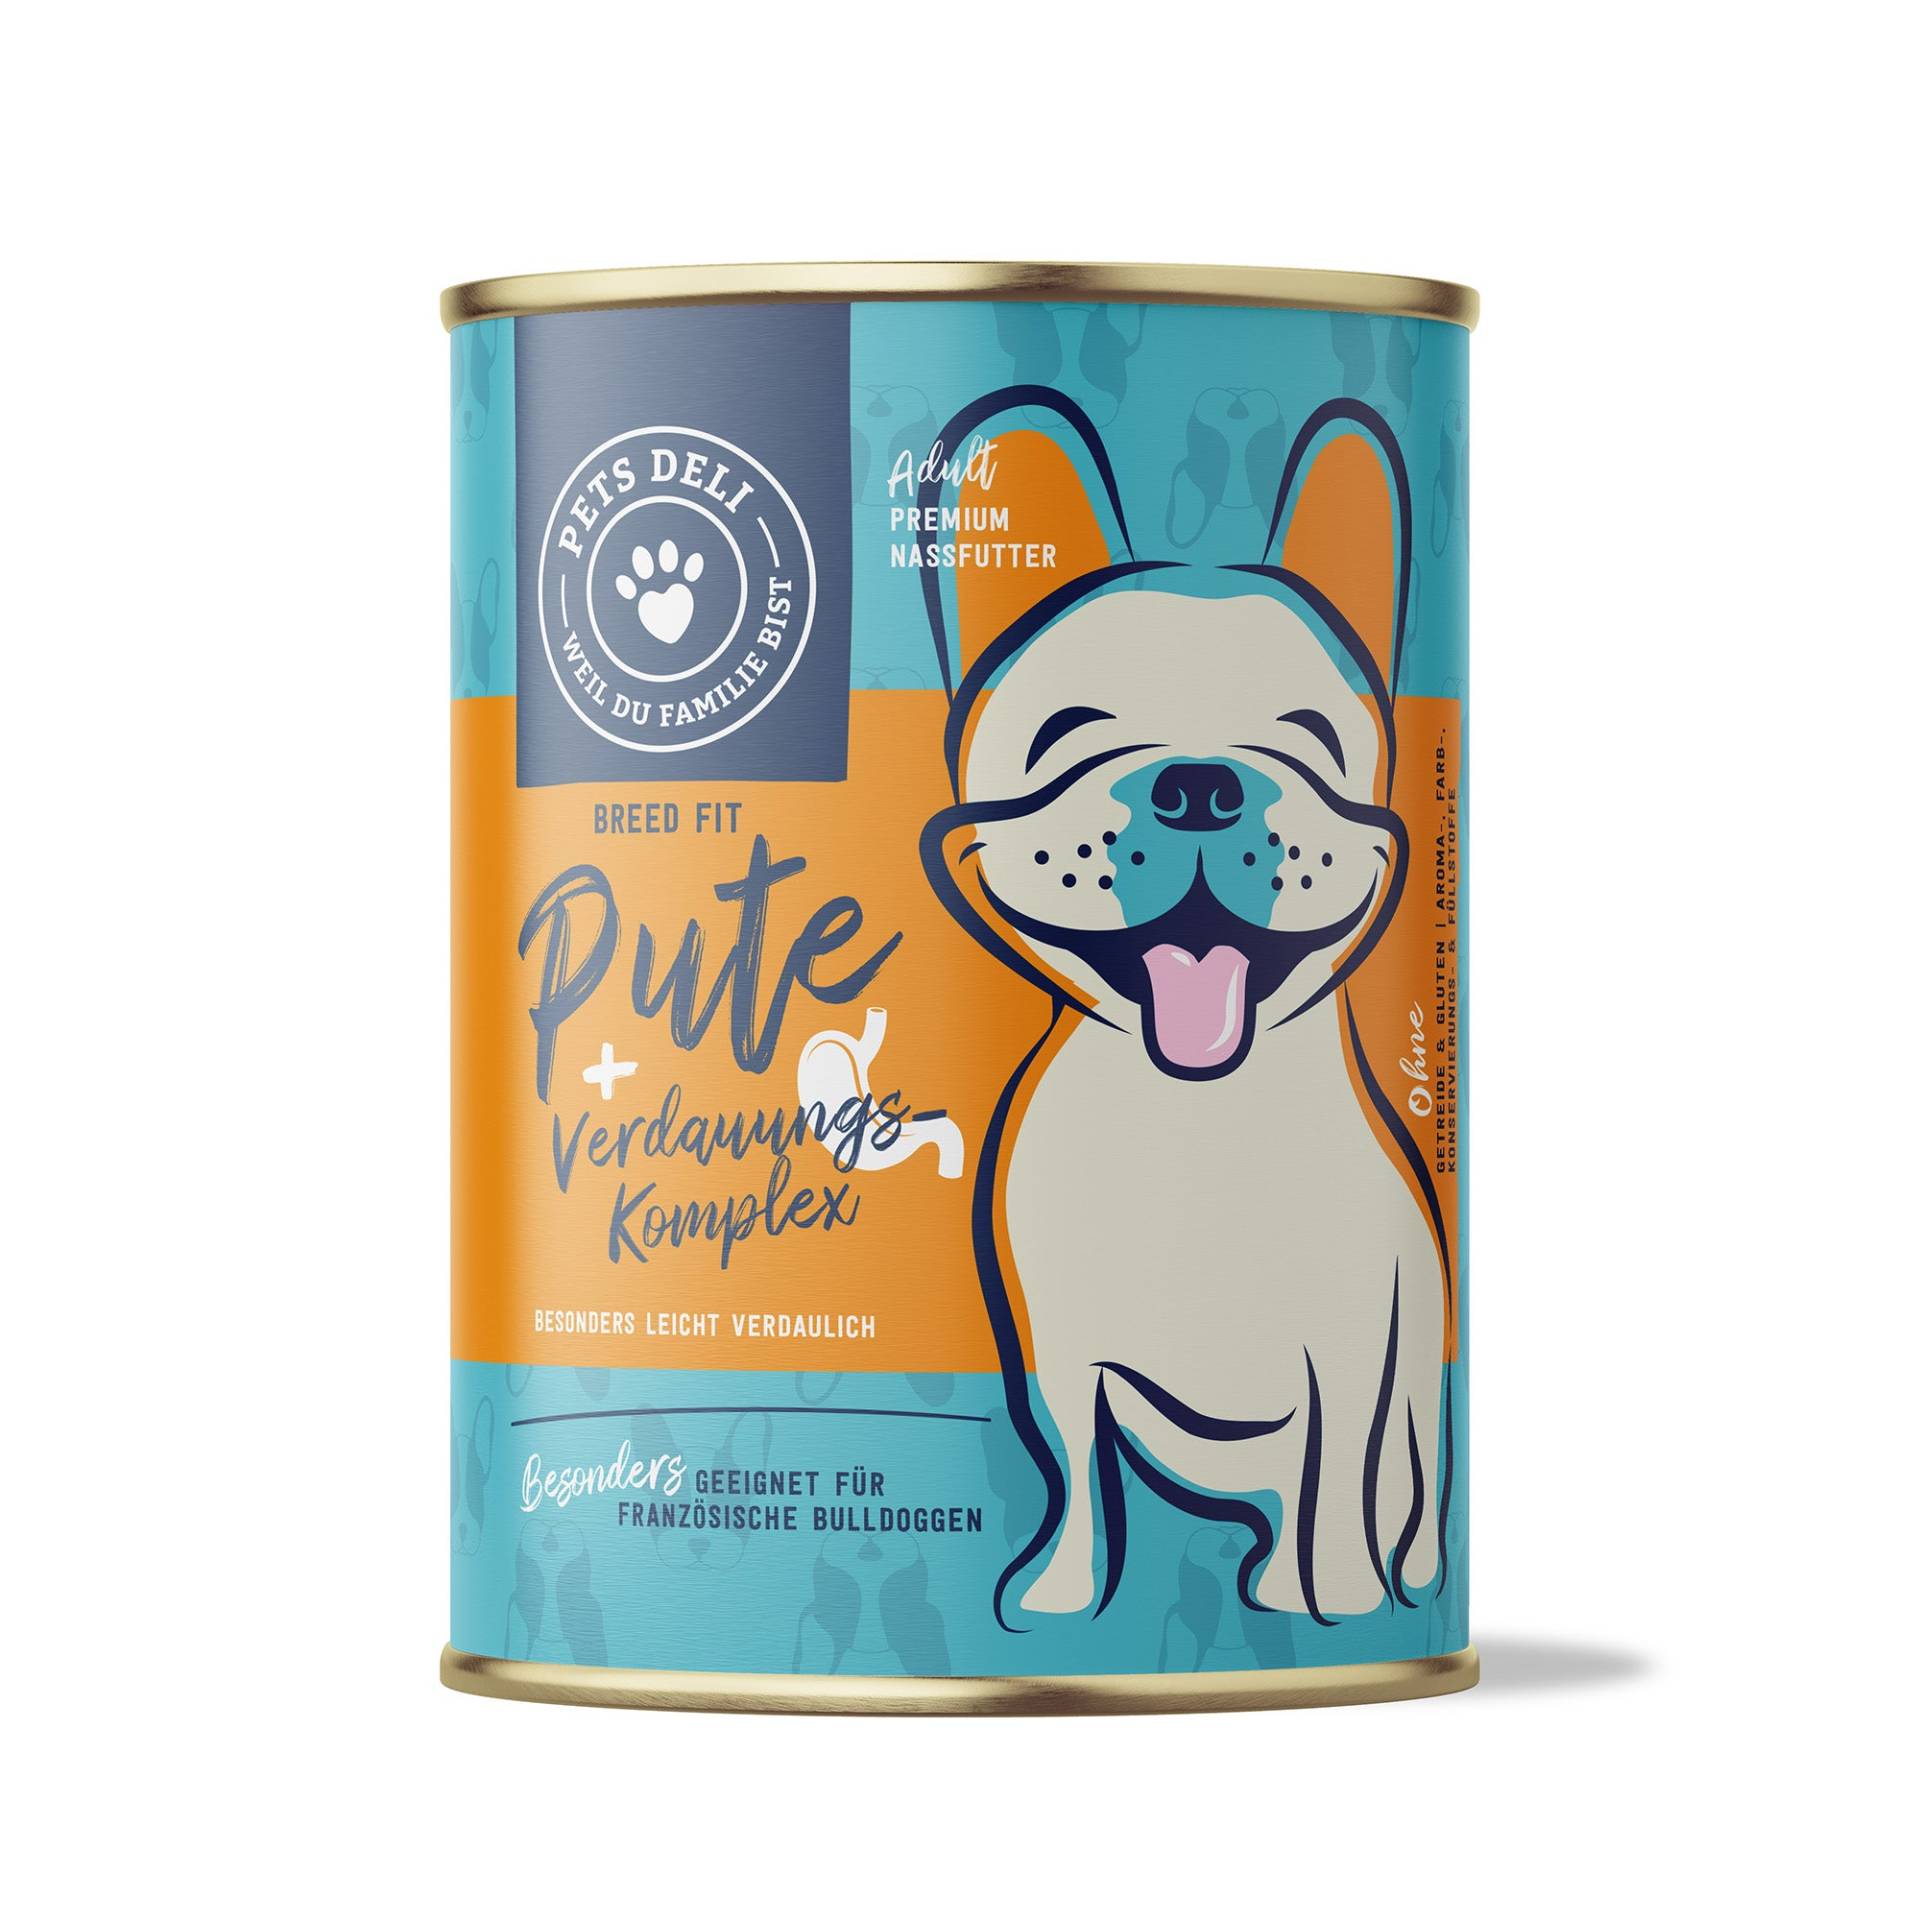 Nassfutter Breed Fit Pute mit Quinoa, Apfel und Hüttenkäse für Hunde - 400g / Einzeldose von Pets Deli